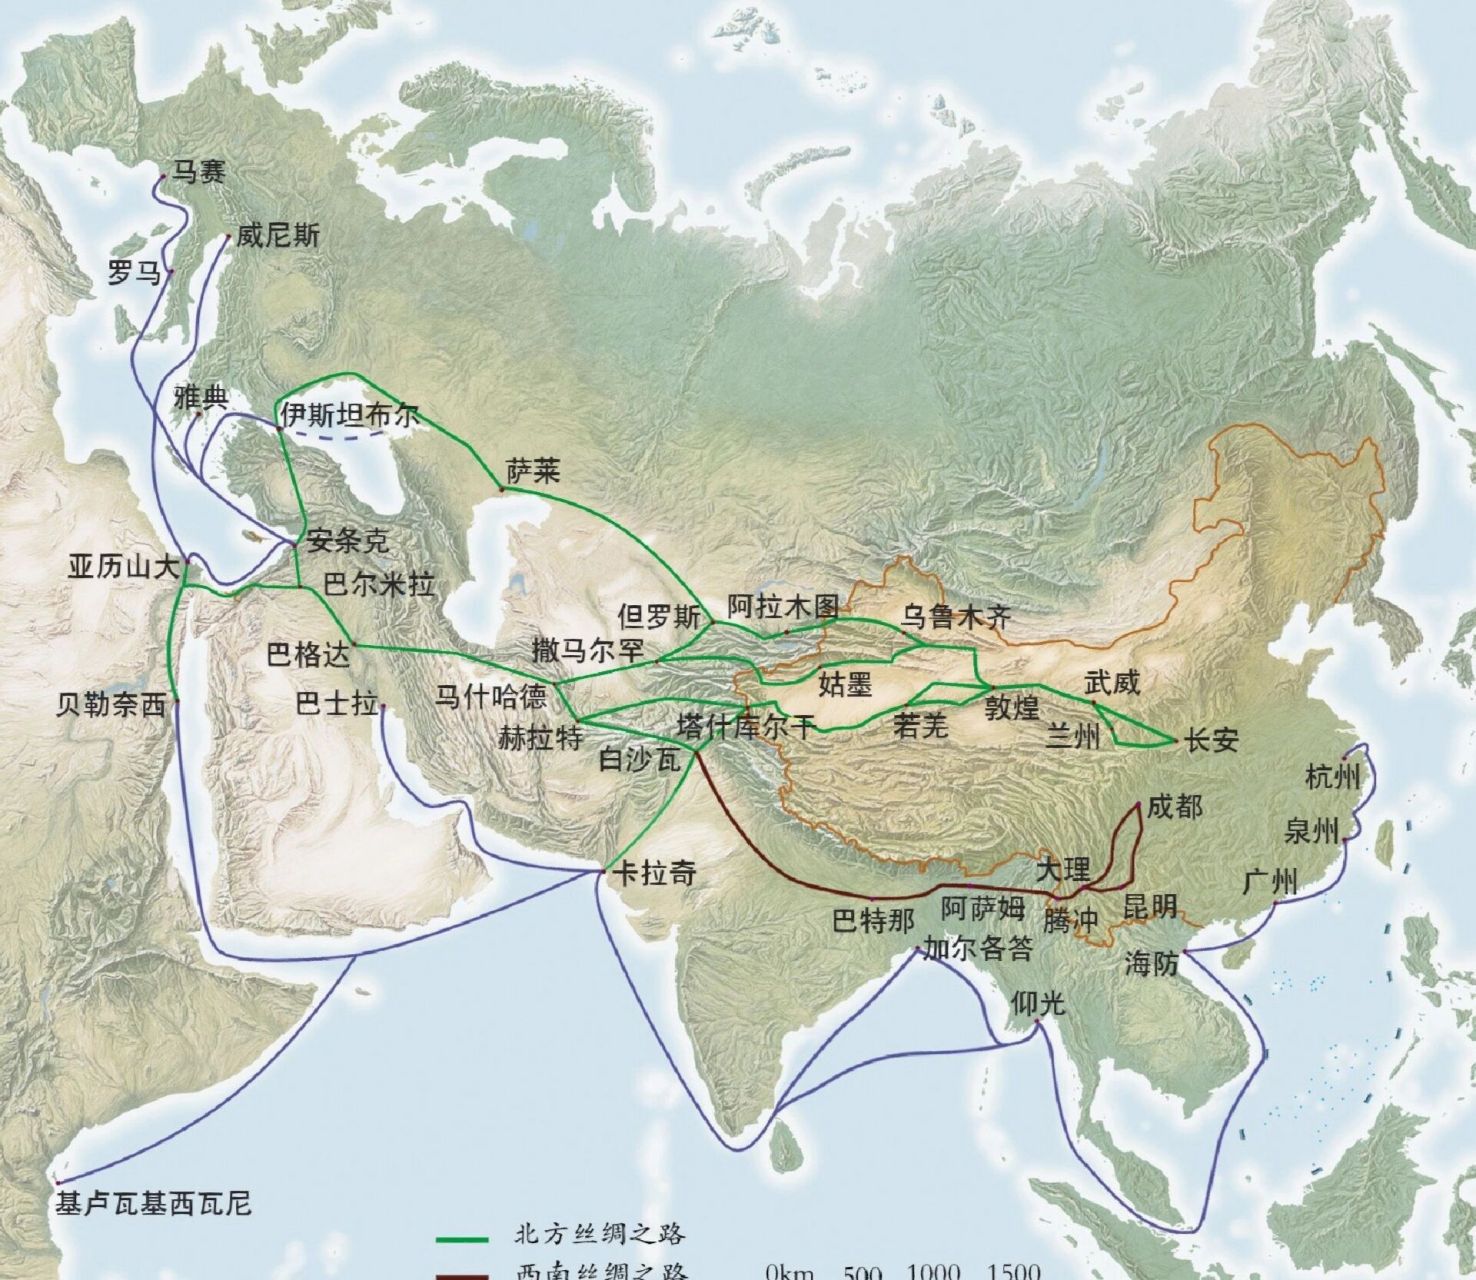 丝绸之路路线图 清晰图片